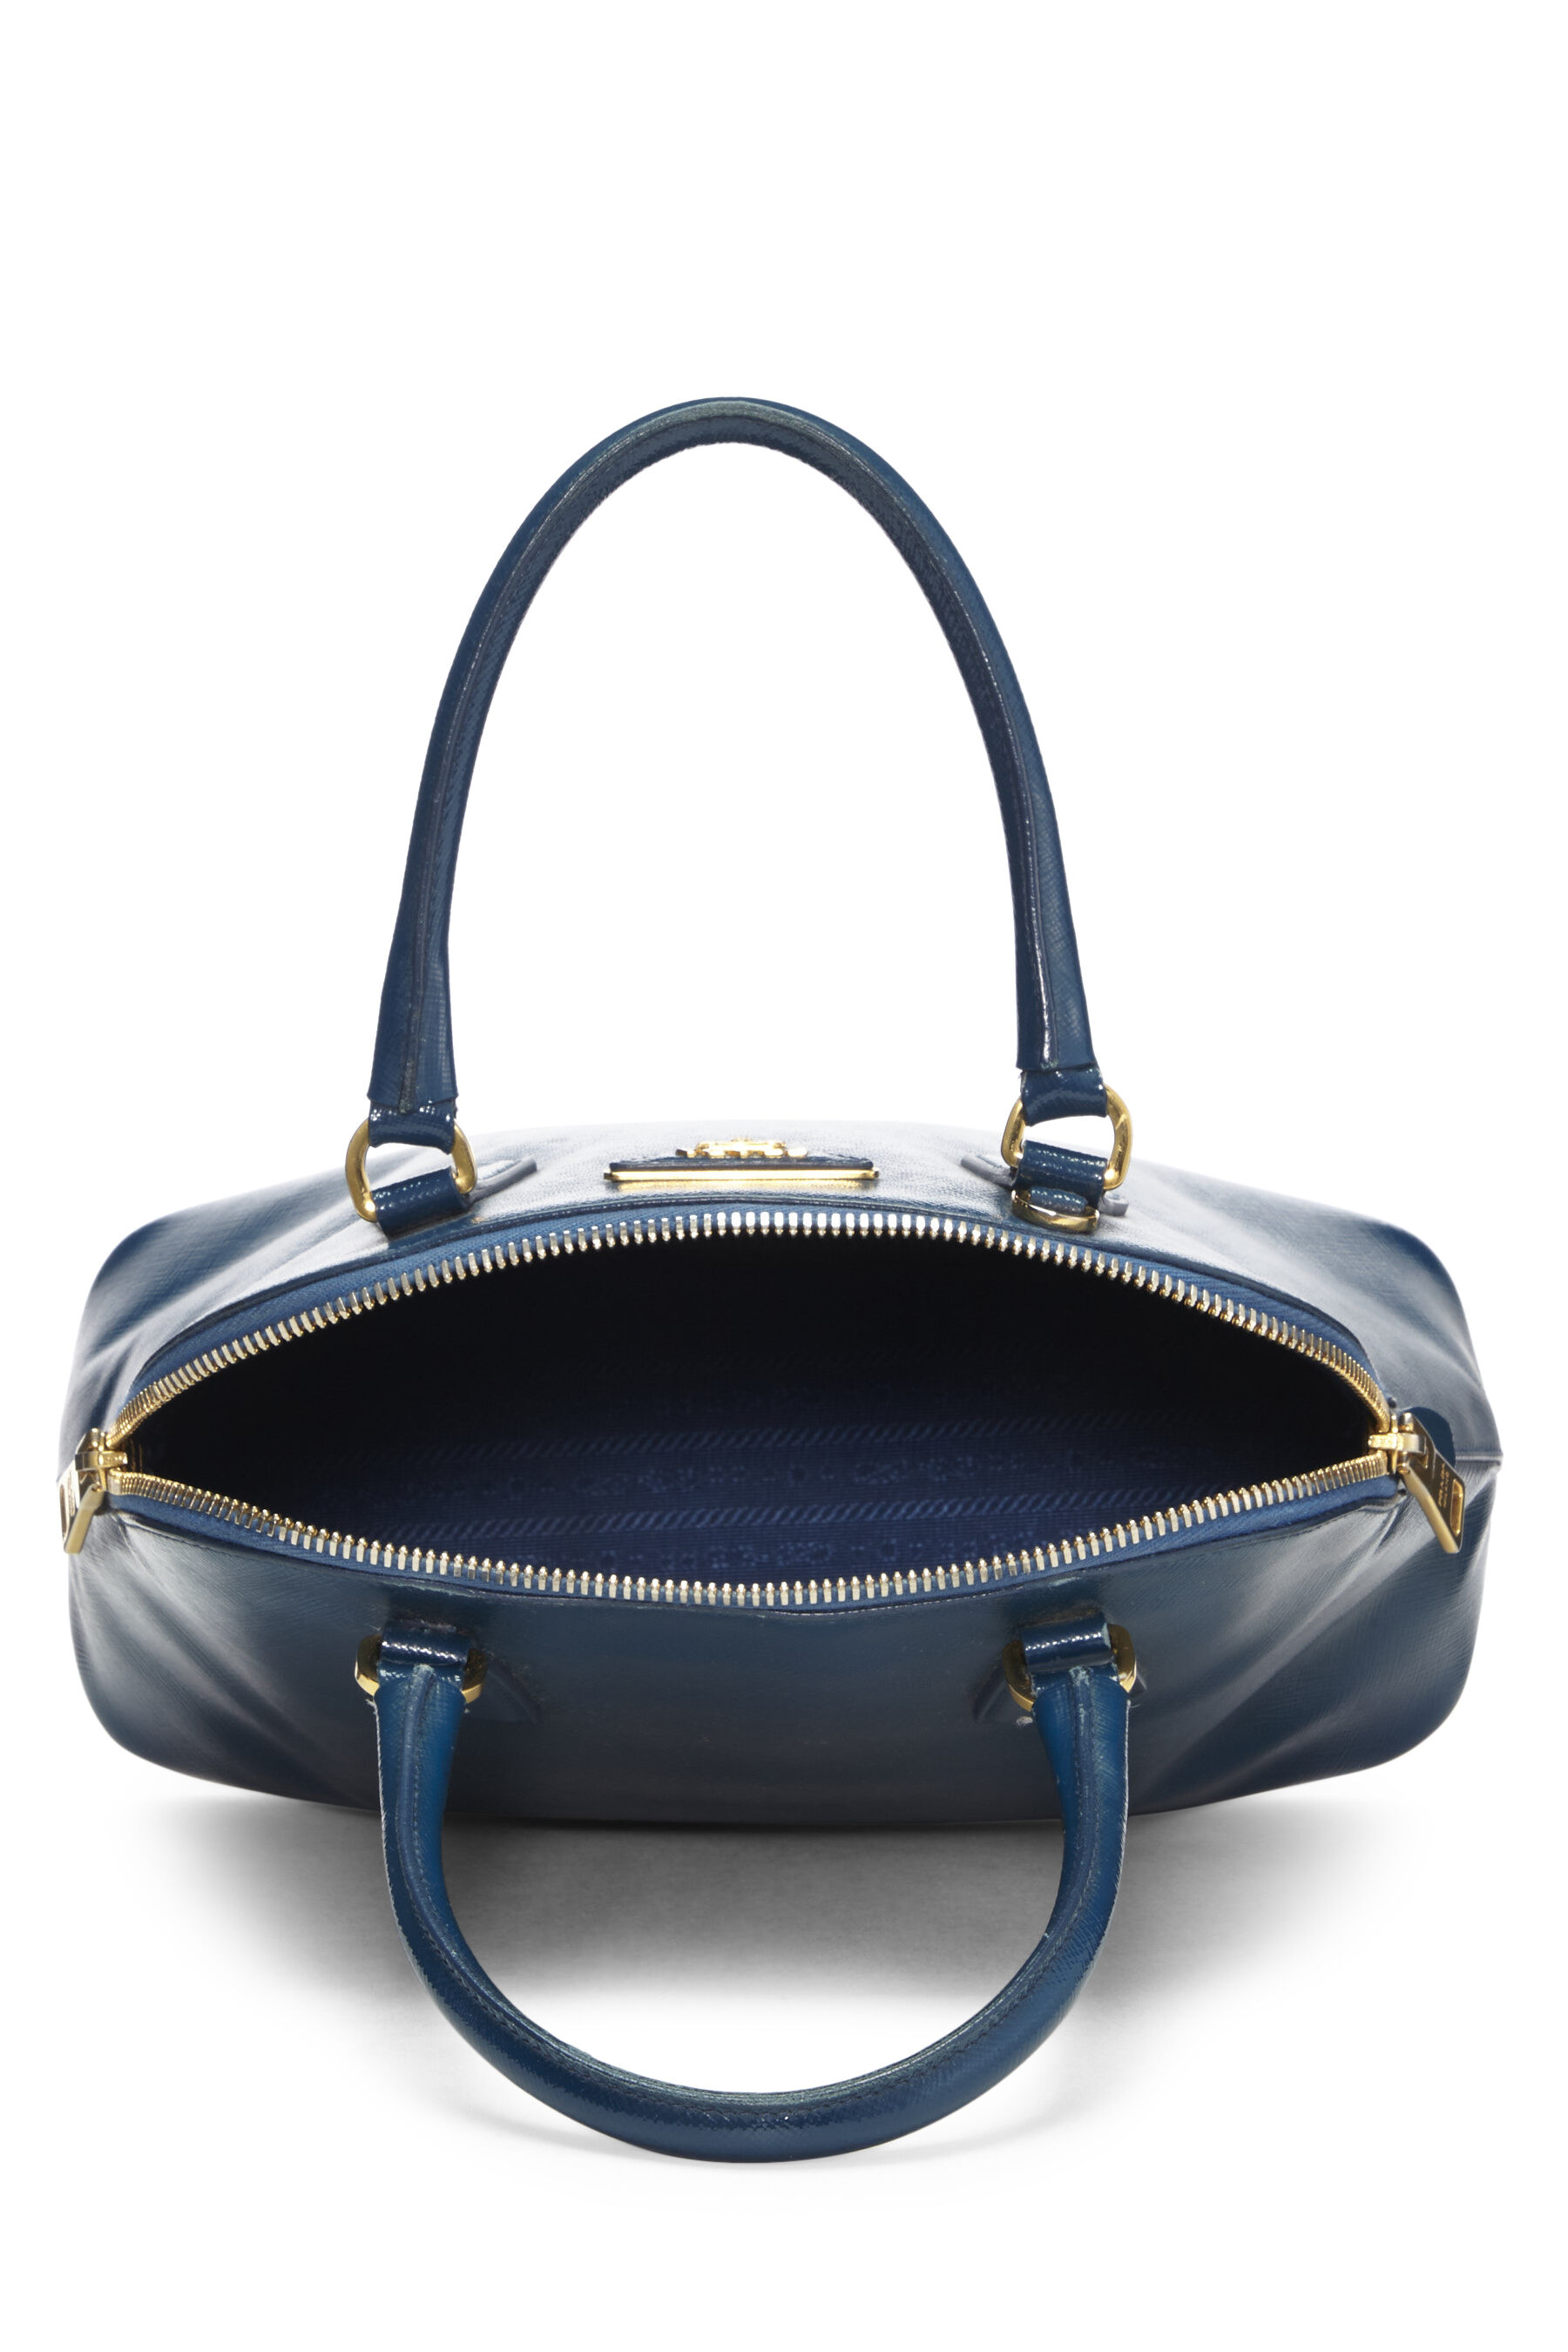 Prada, Bags, Prada Pattina Saffiano Vernice Small Ink Blue Patent Leather  Shoulder Bag